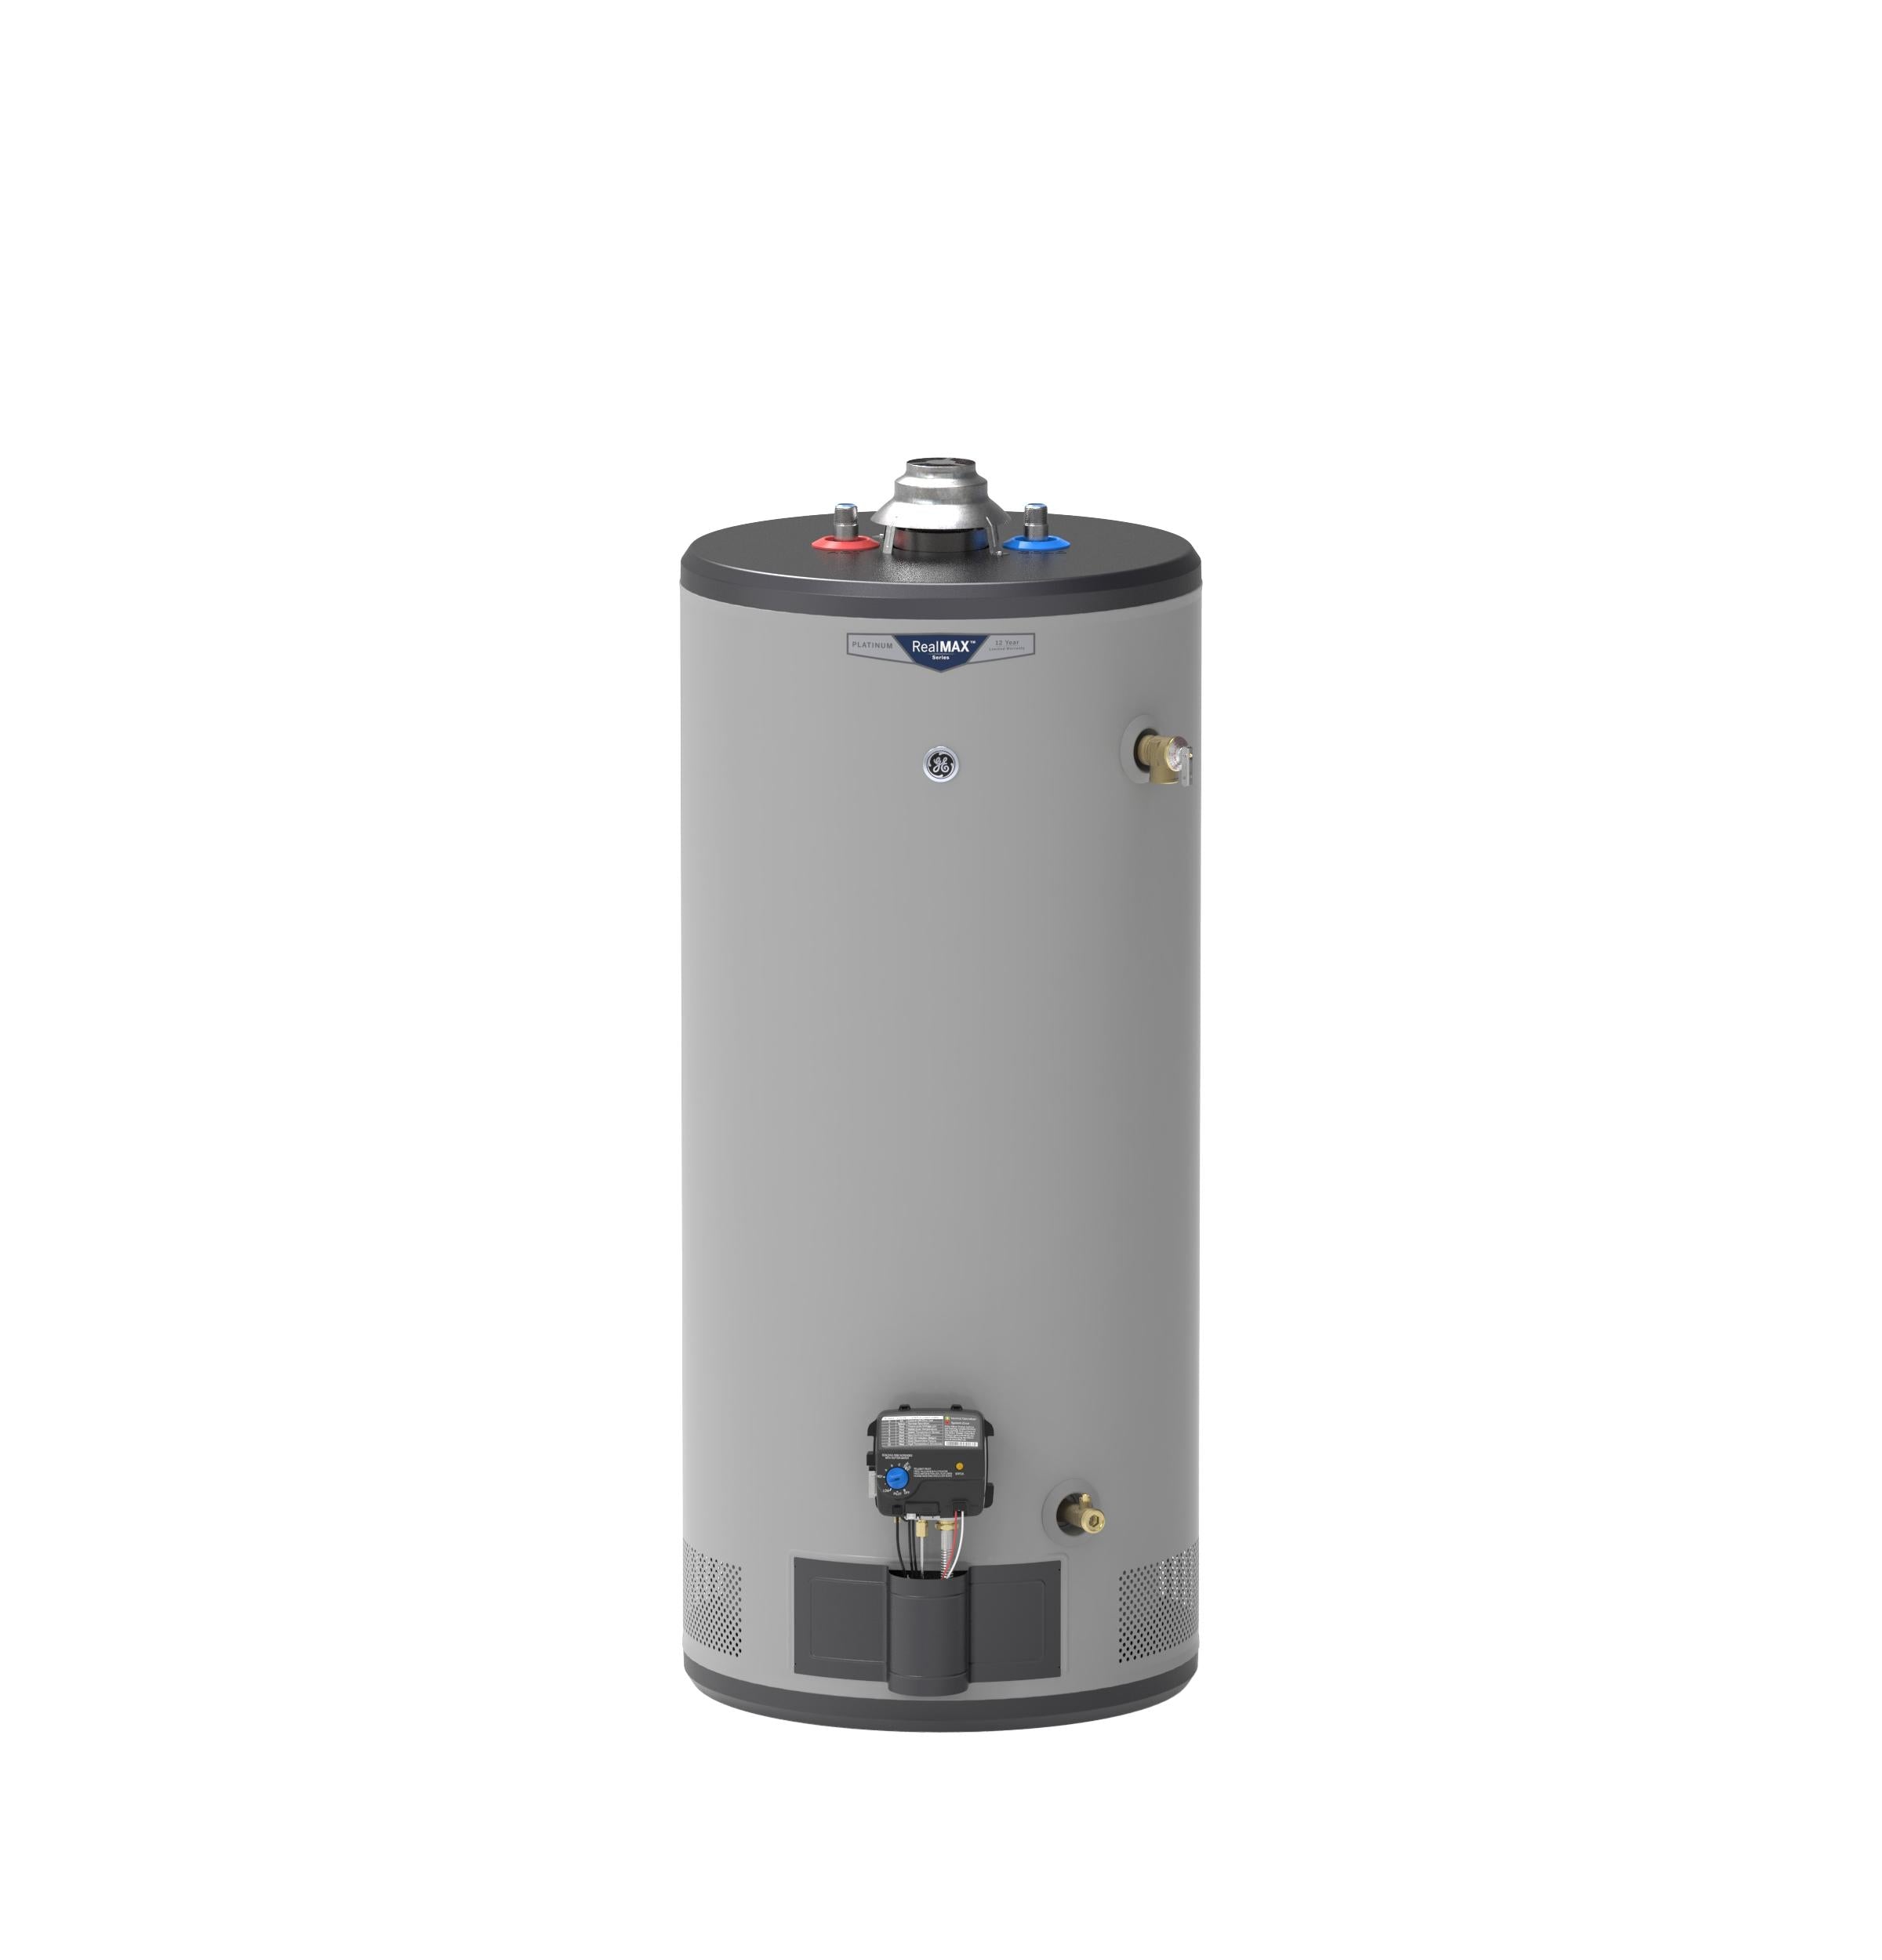 GE RealMAX Platinum 40-Gallon Short Liquid Propane Atmospheric Water Heater